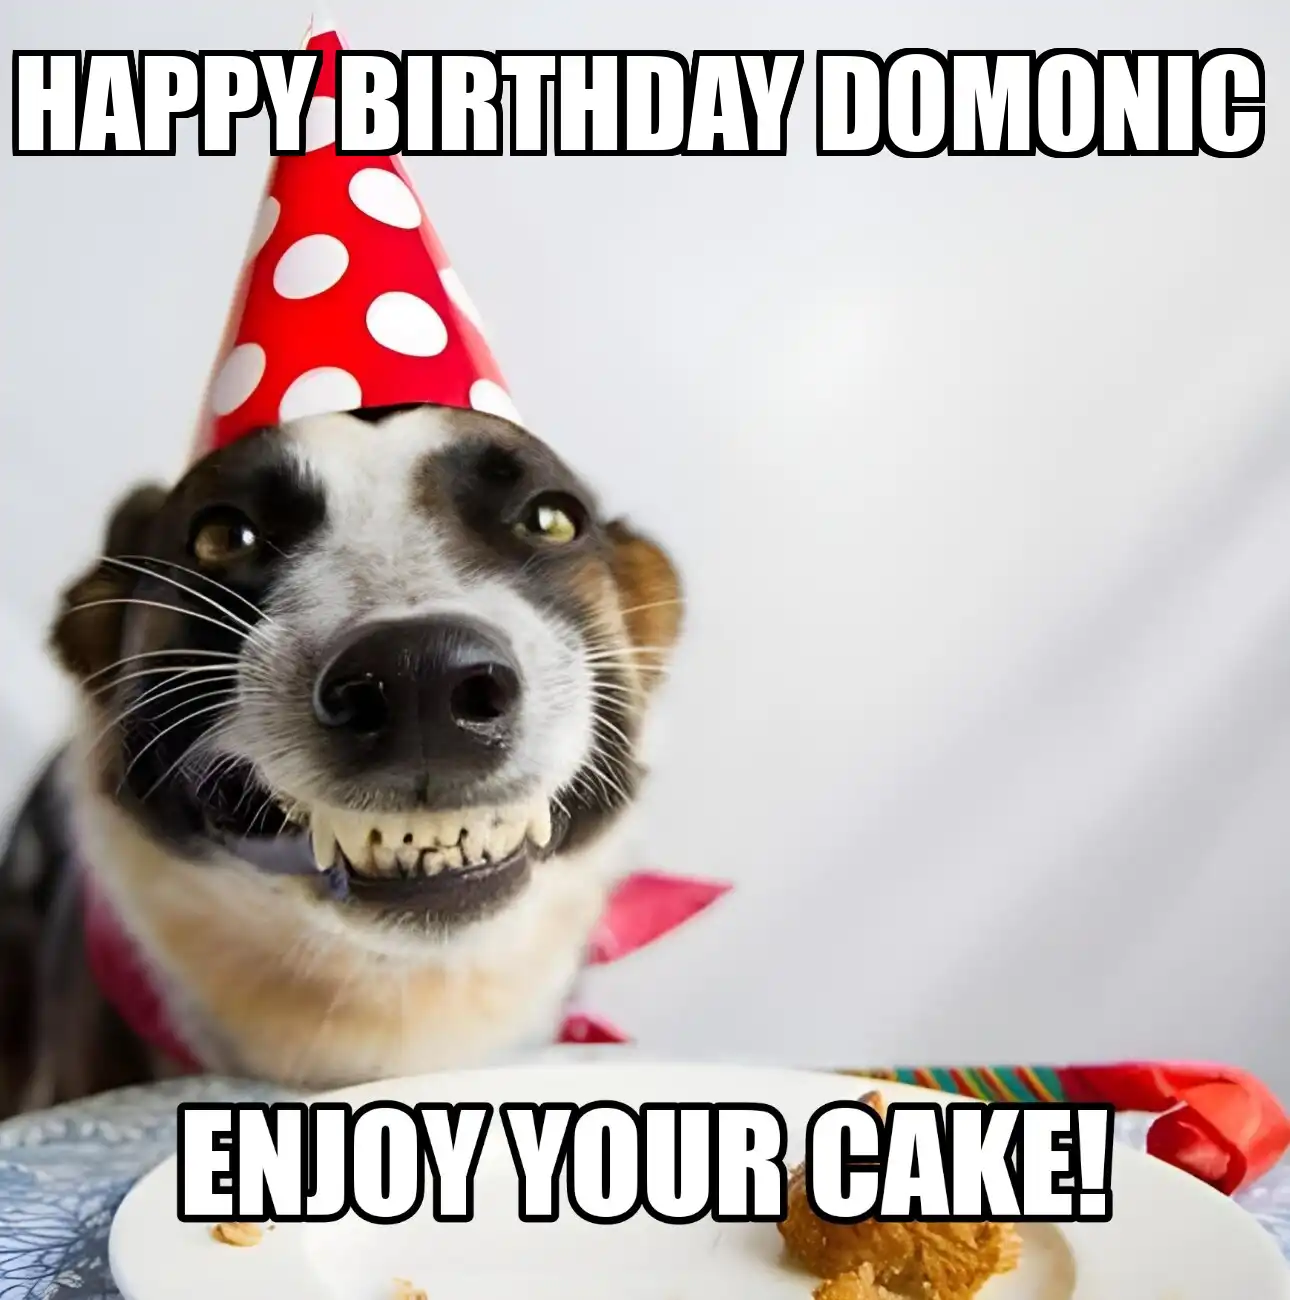 Happy Birthday Domonic Enjoy Your Cake Dog Meme